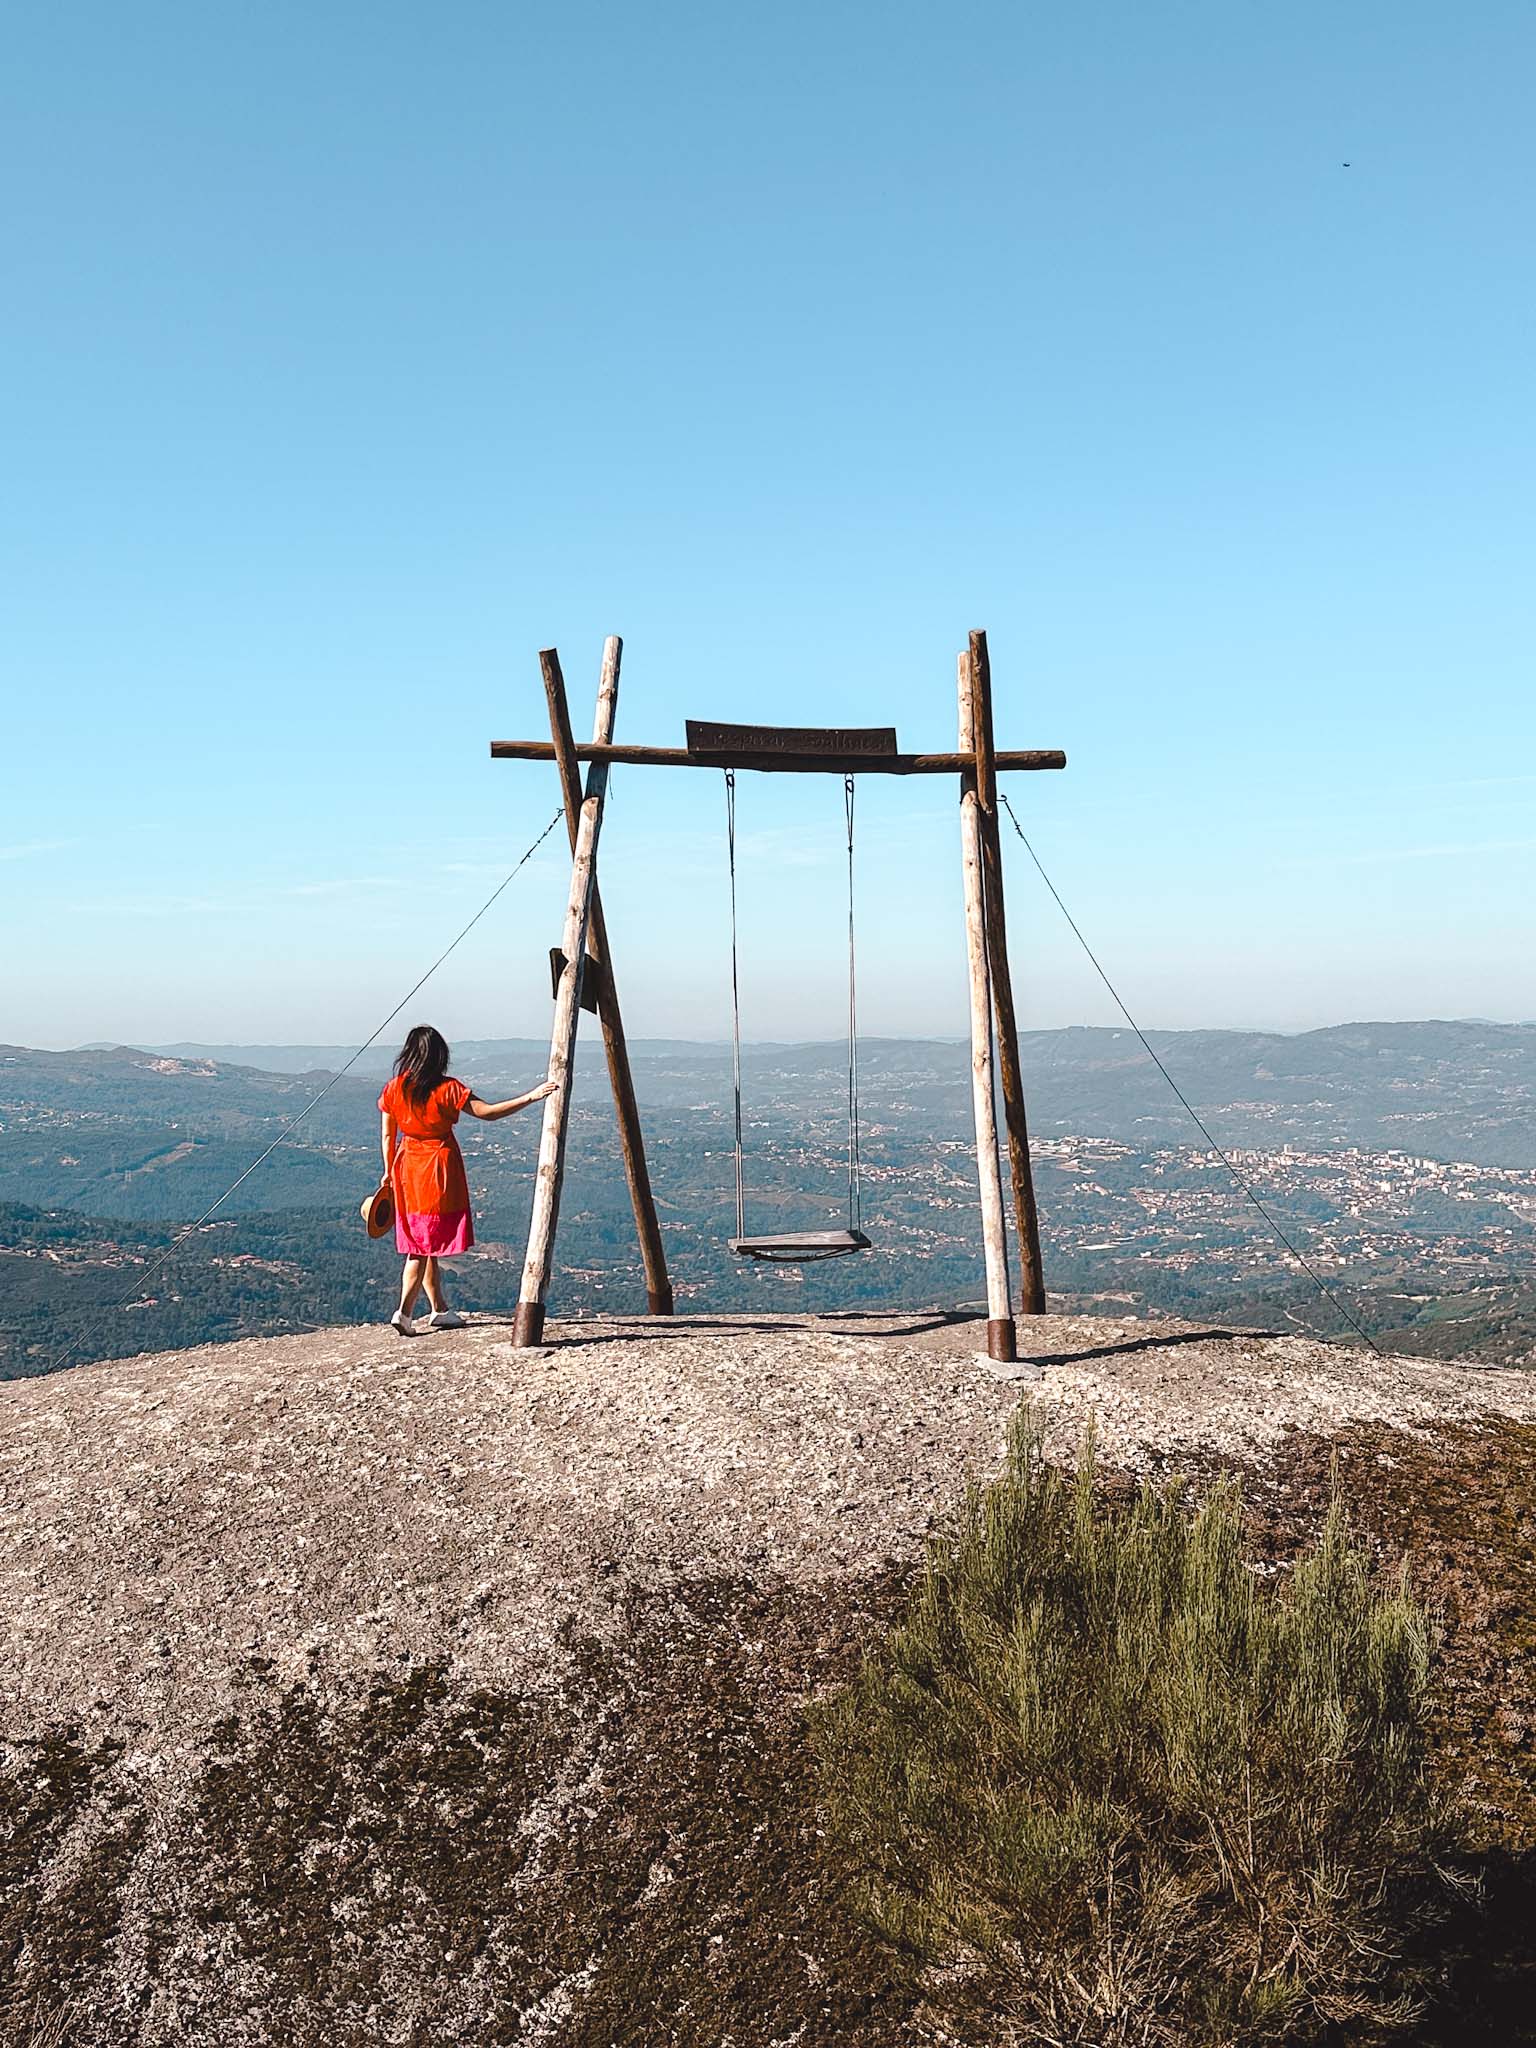 Baloiço de Soalhães swing in Portugal